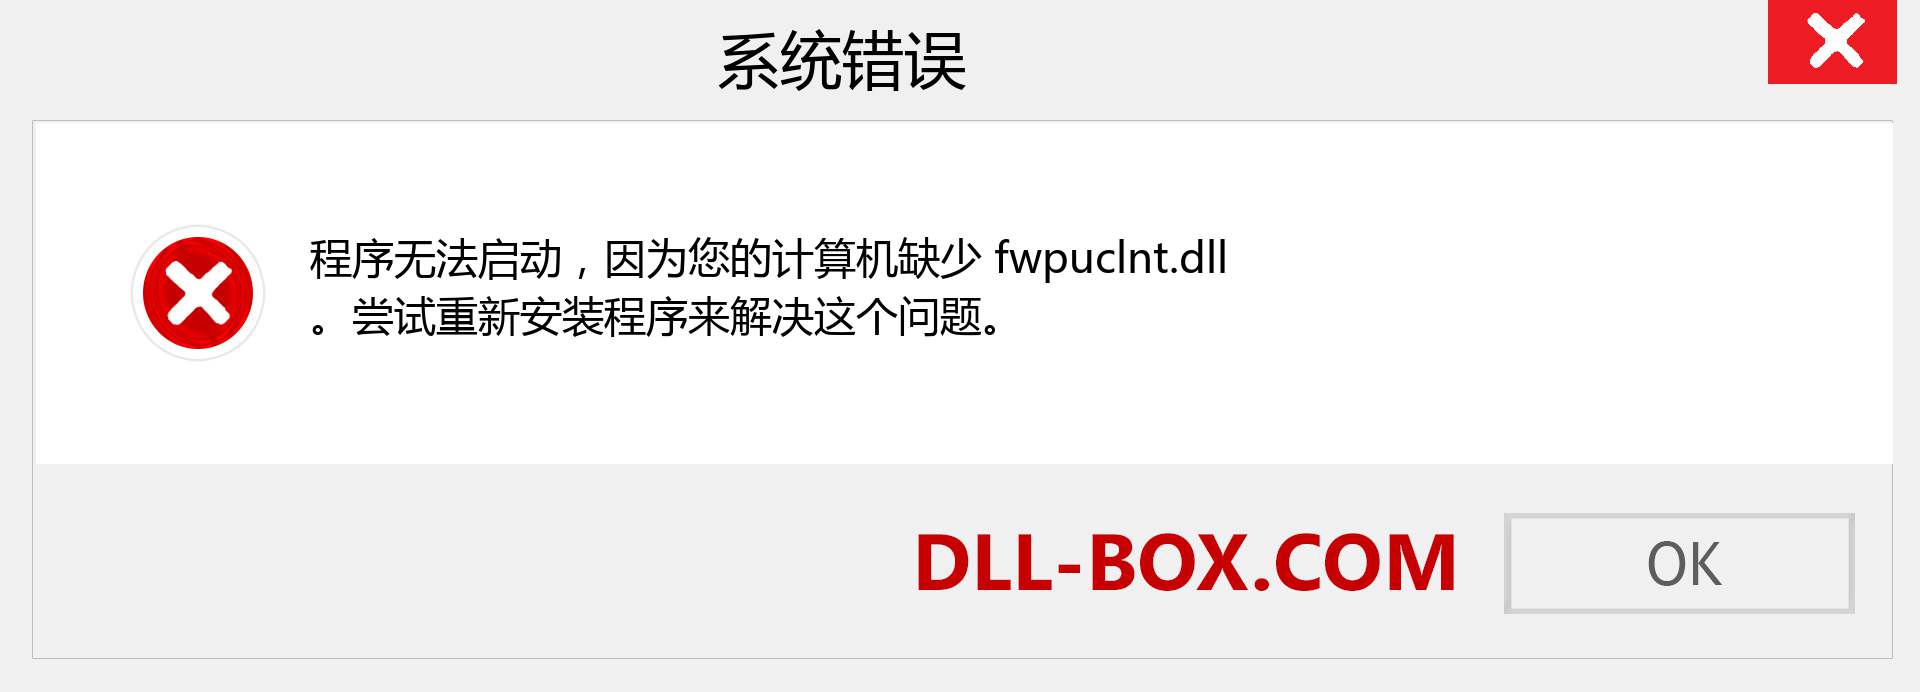 fwpuclnt.dll 文件丢失？。 适用于 Windows 7、8、10 的下载 - 修复 Windows、照片、图像上的 fwpuclnt dll 丢失错误